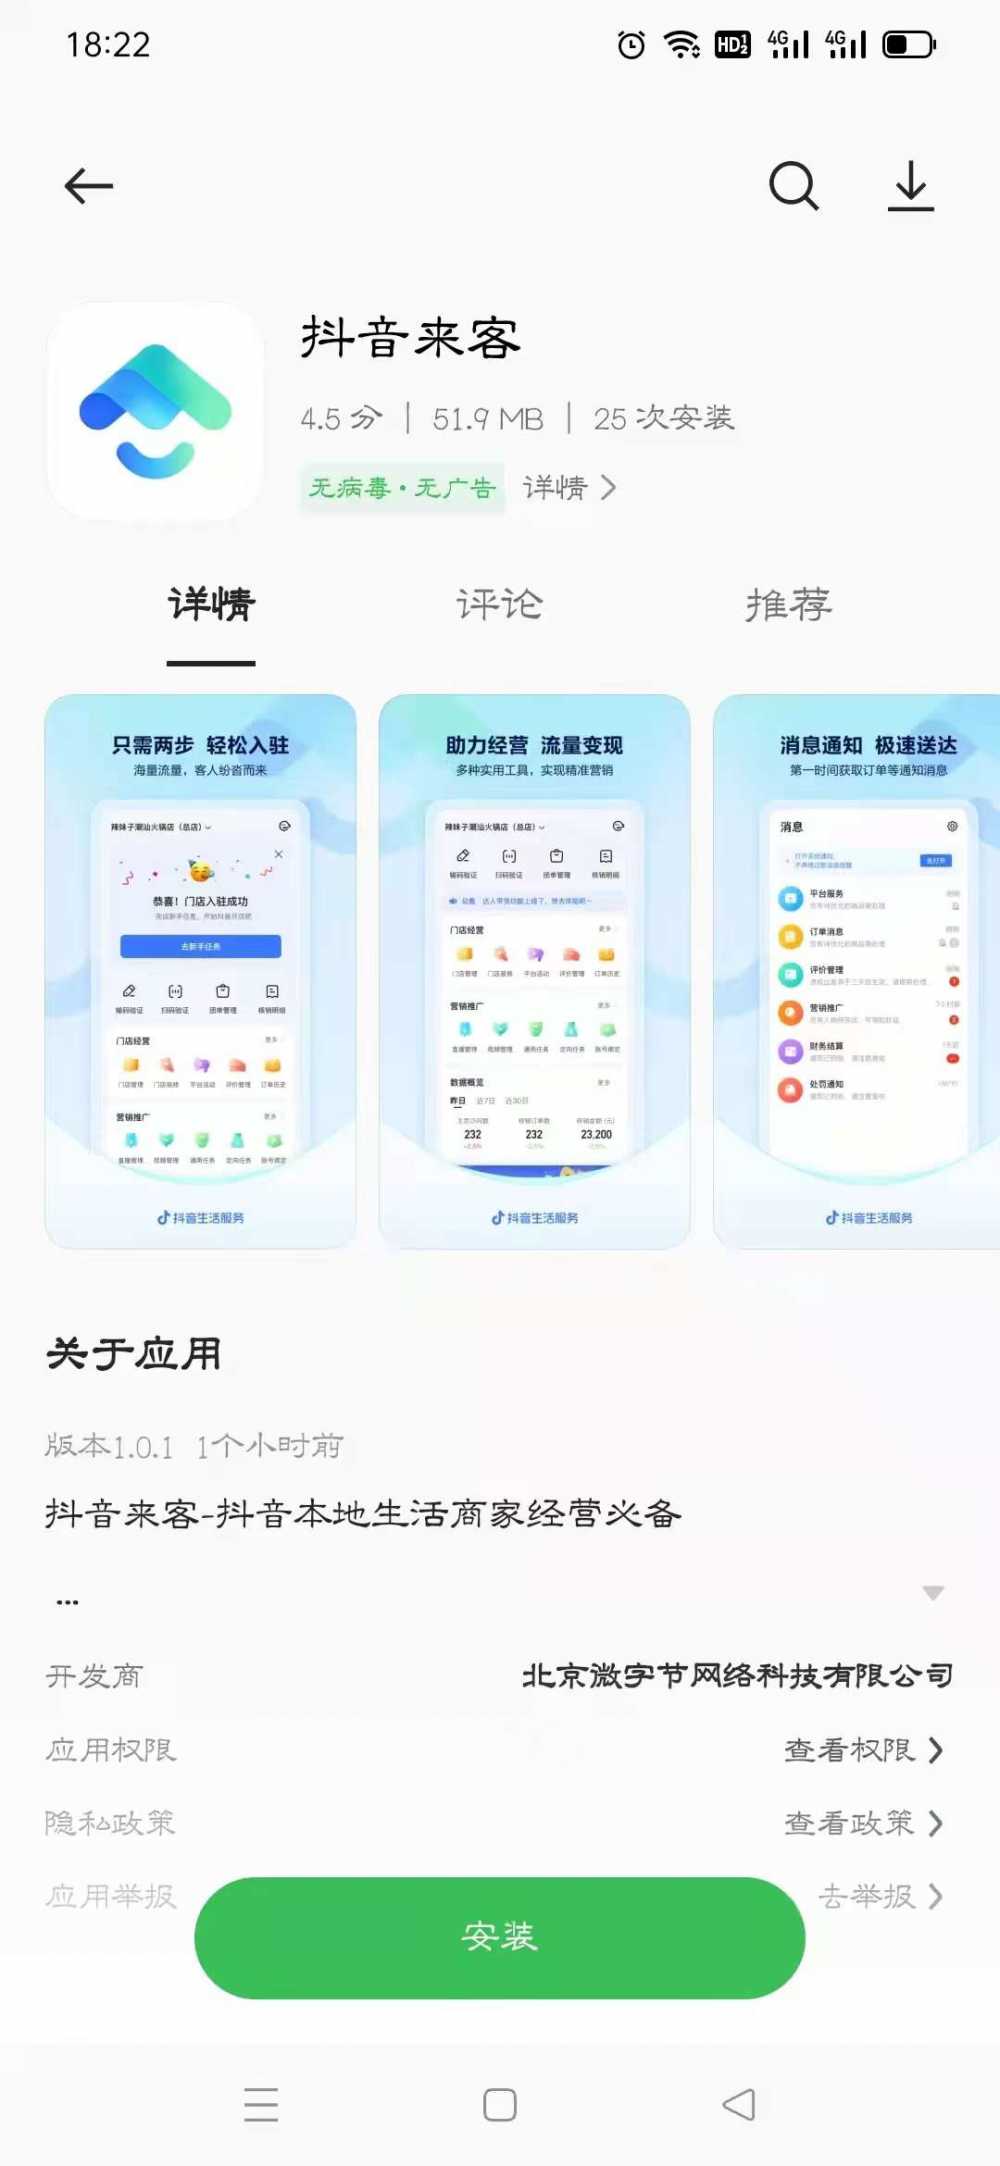 微信内测半屏小程序；抖音电商运营团队调整薪资；腾讯音乐推出<a href='https://www.zhouxiaohui.cn/duanshipin/
' target='_blank'>短视频</a>App-第5张图片-周小辉博客